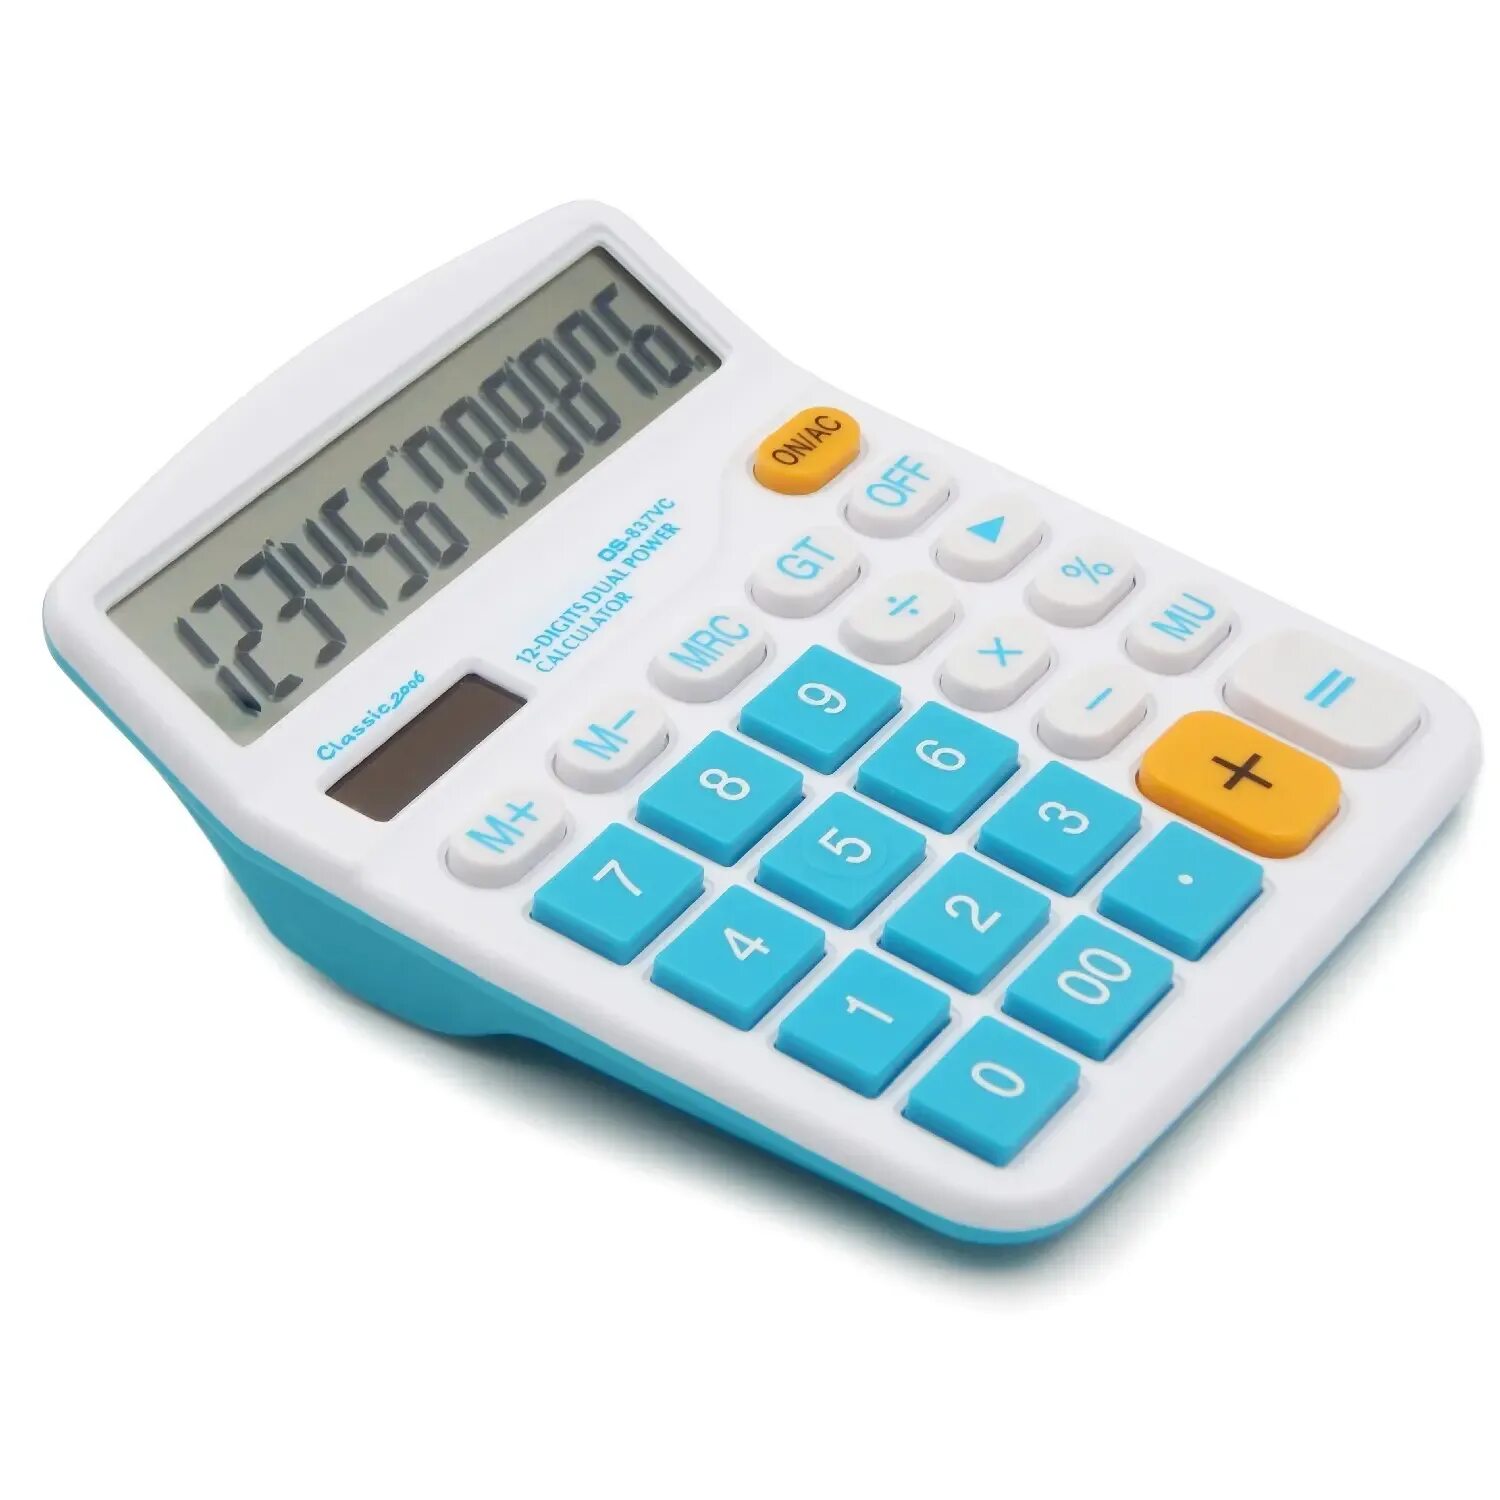 Калькулятор SD-1200. Калькулятор компактный e837. E1210 калькулятор. Калькулятор ke-017g.